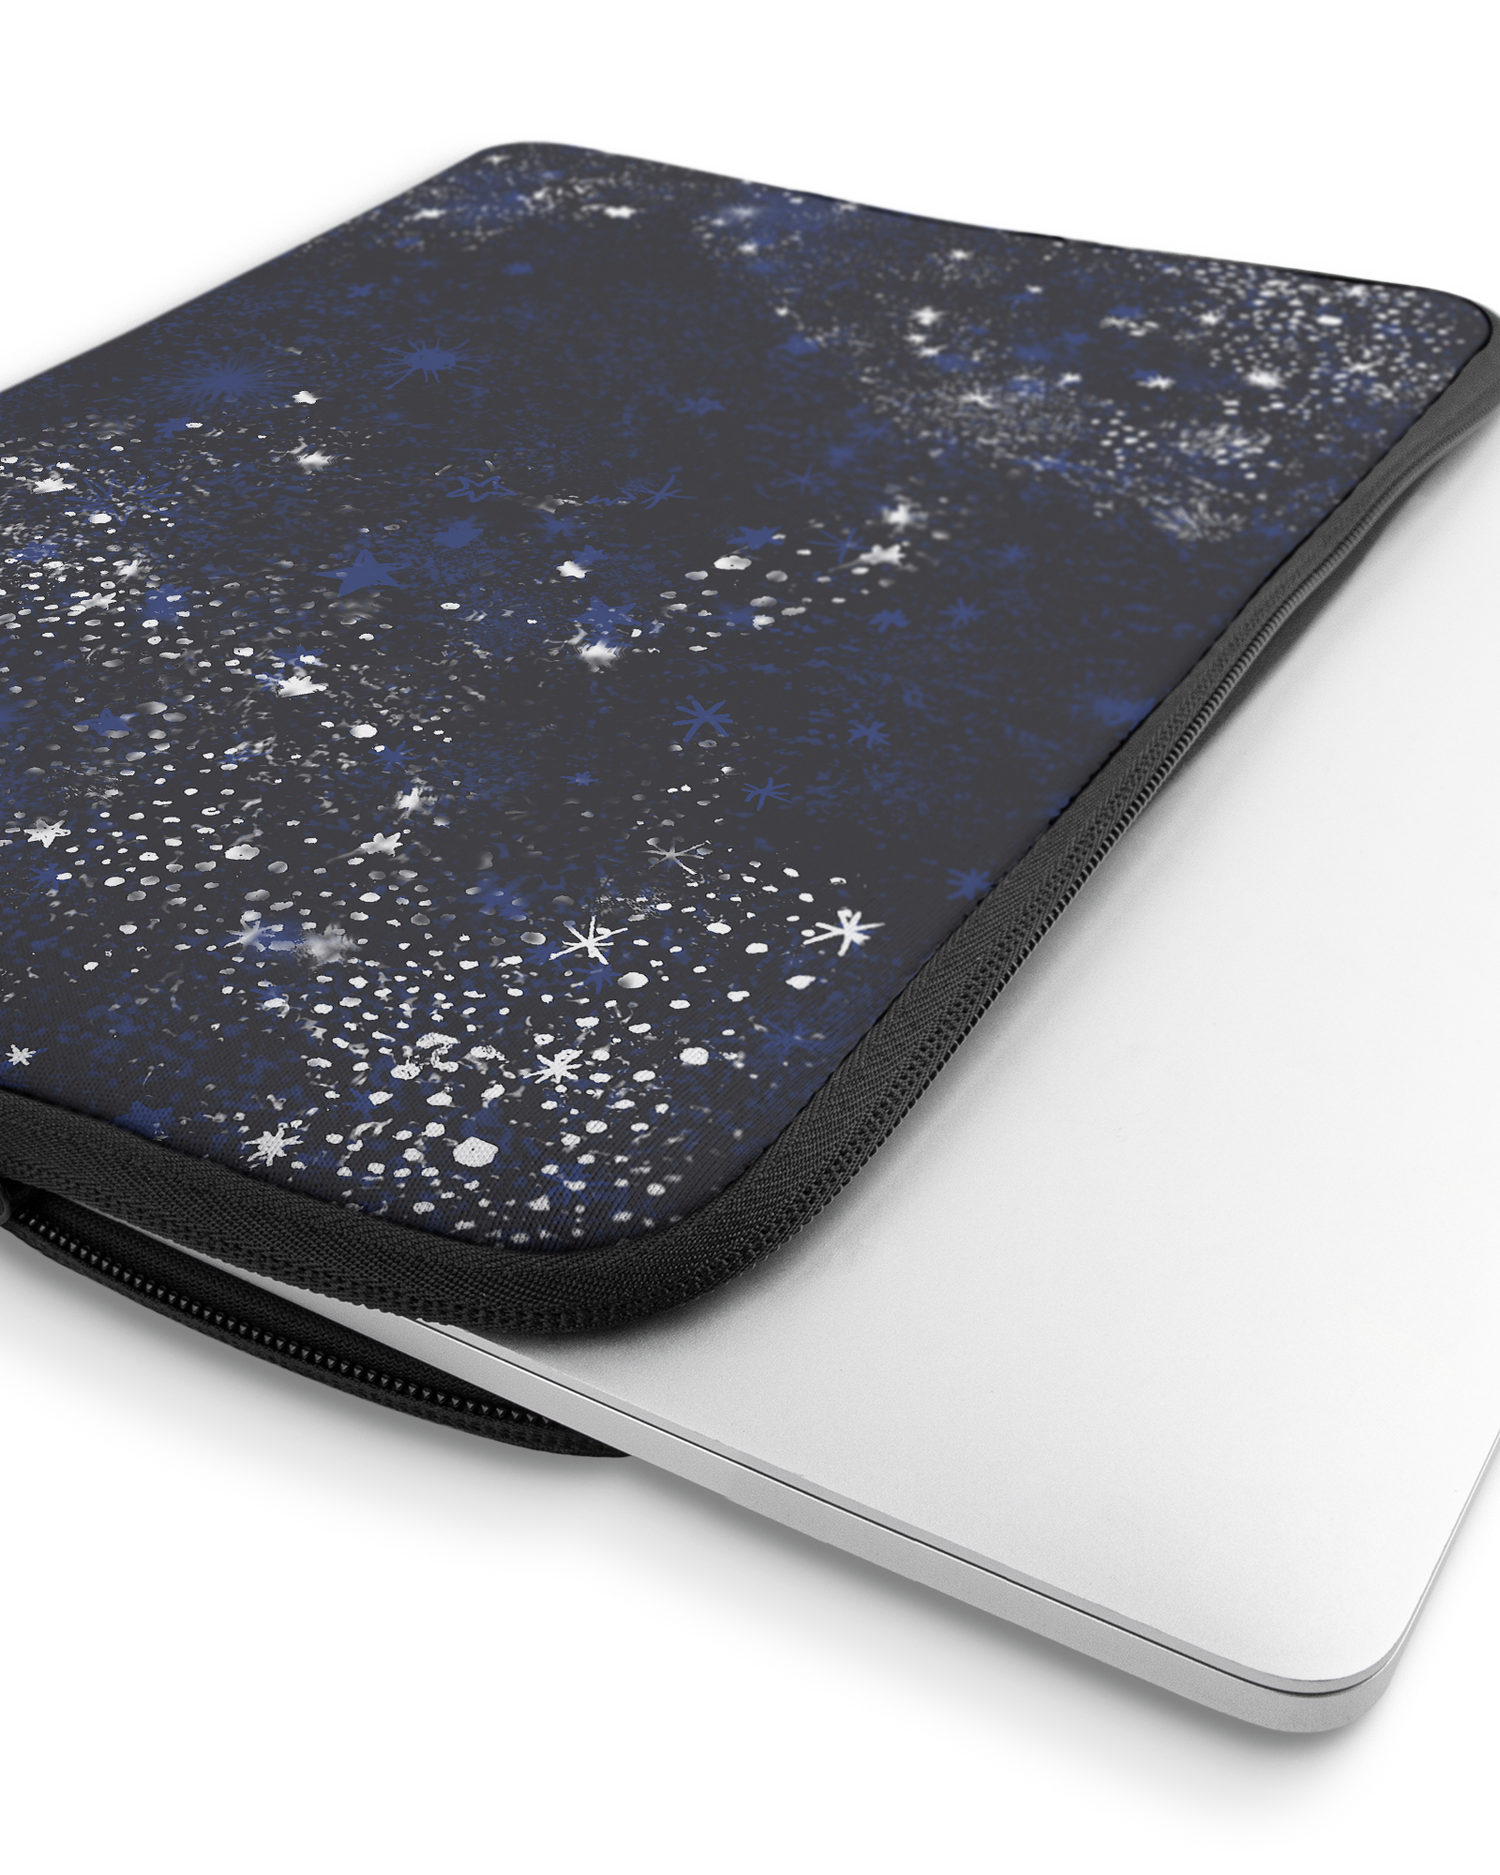 Starry Night Sky Laptophülle 16 Zoll mit Gerät im Inneren